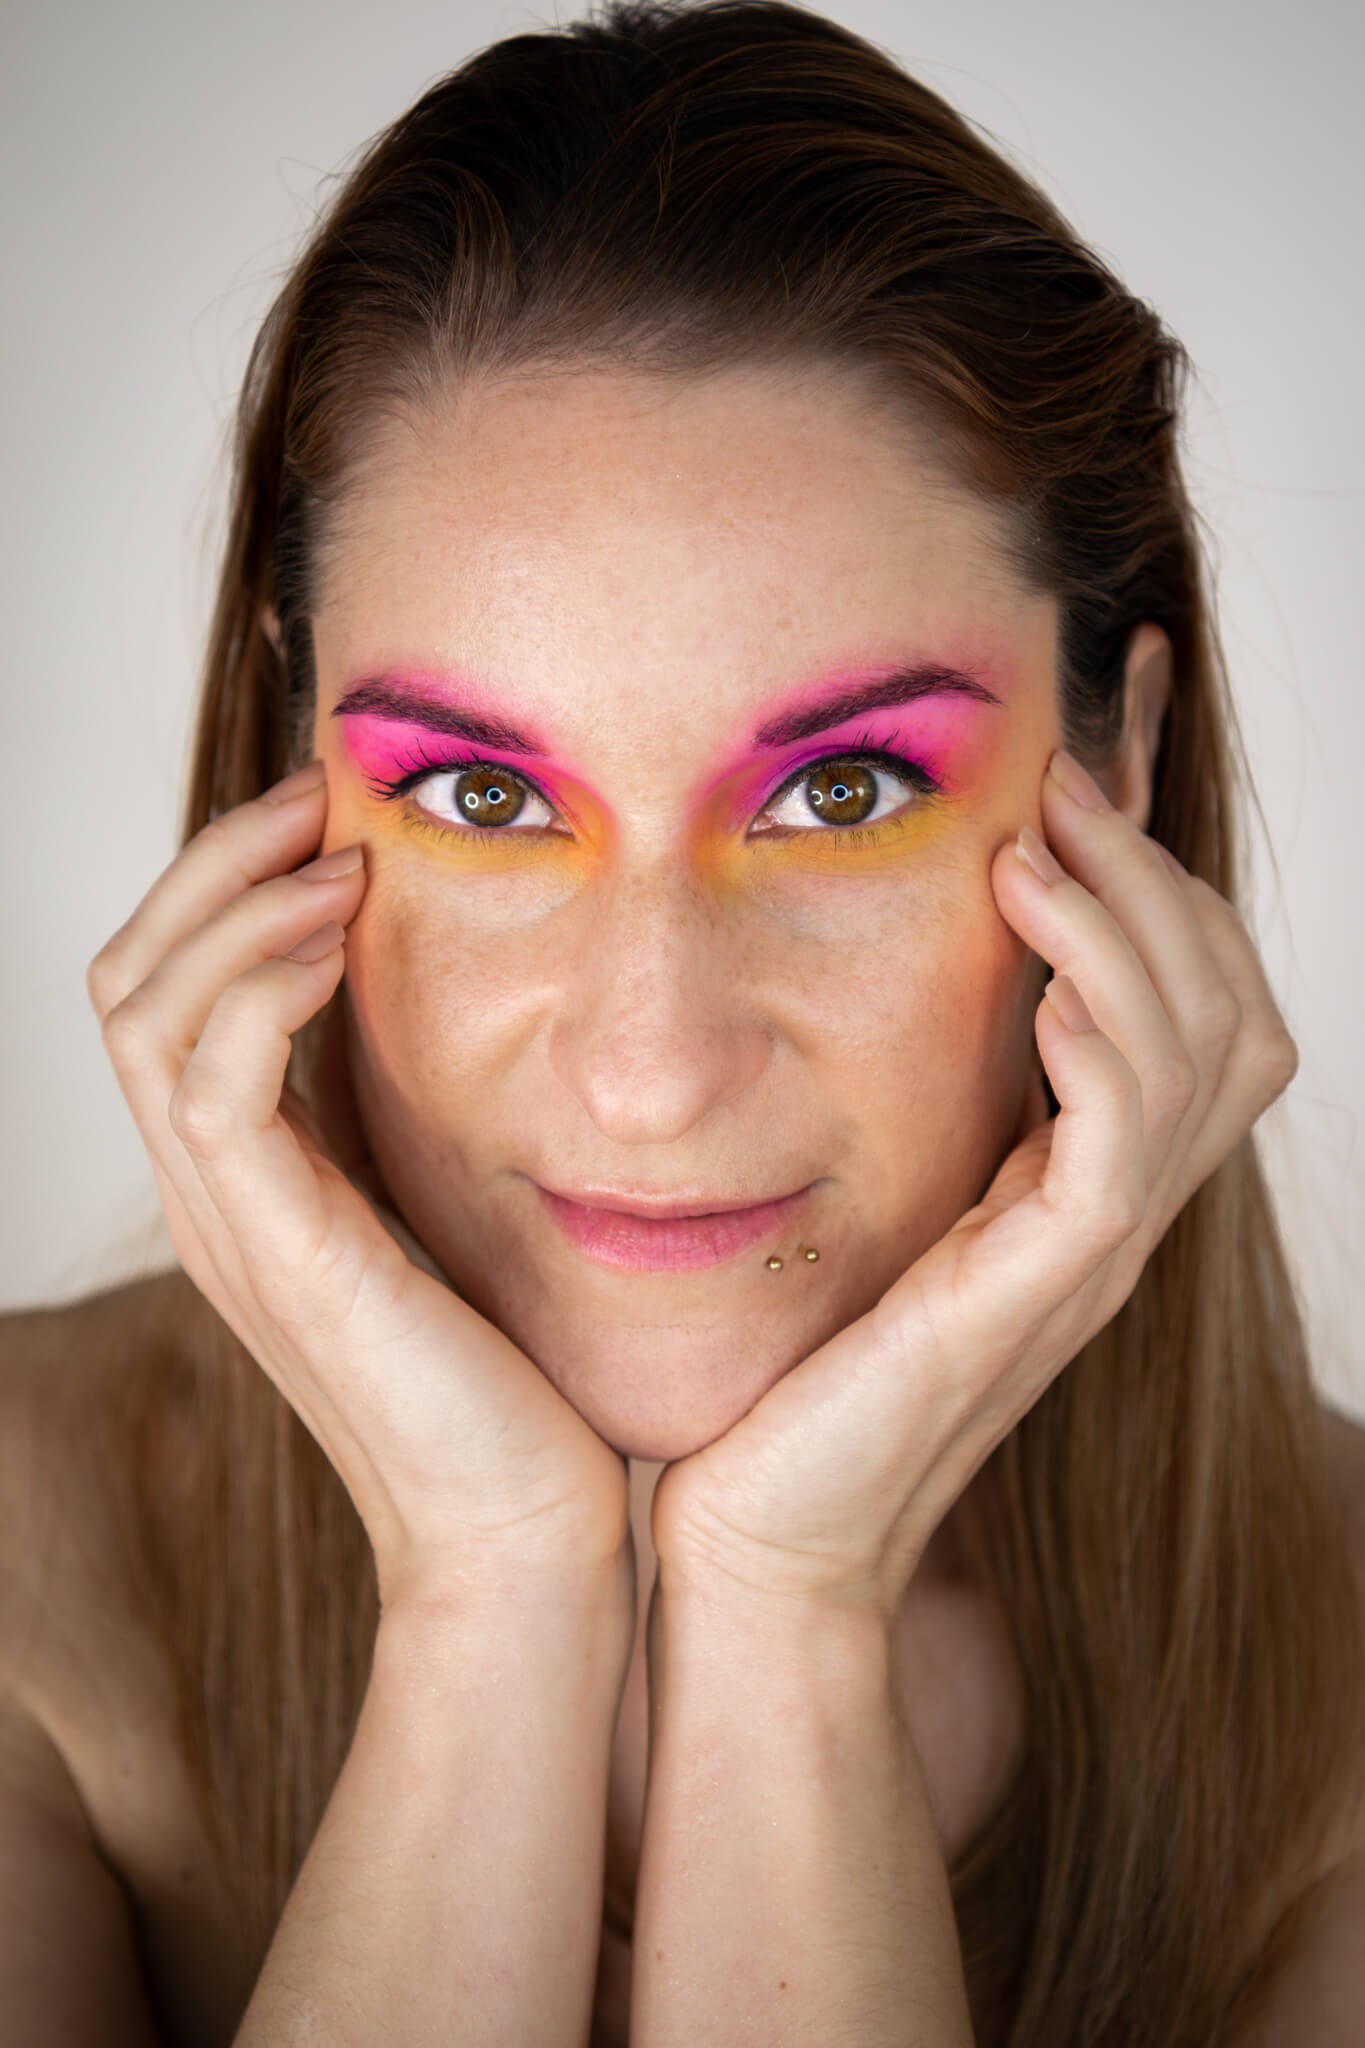 Rothaarige, junge Frau mit orange-pinken Augenmakeup vor weißem Hintergrund